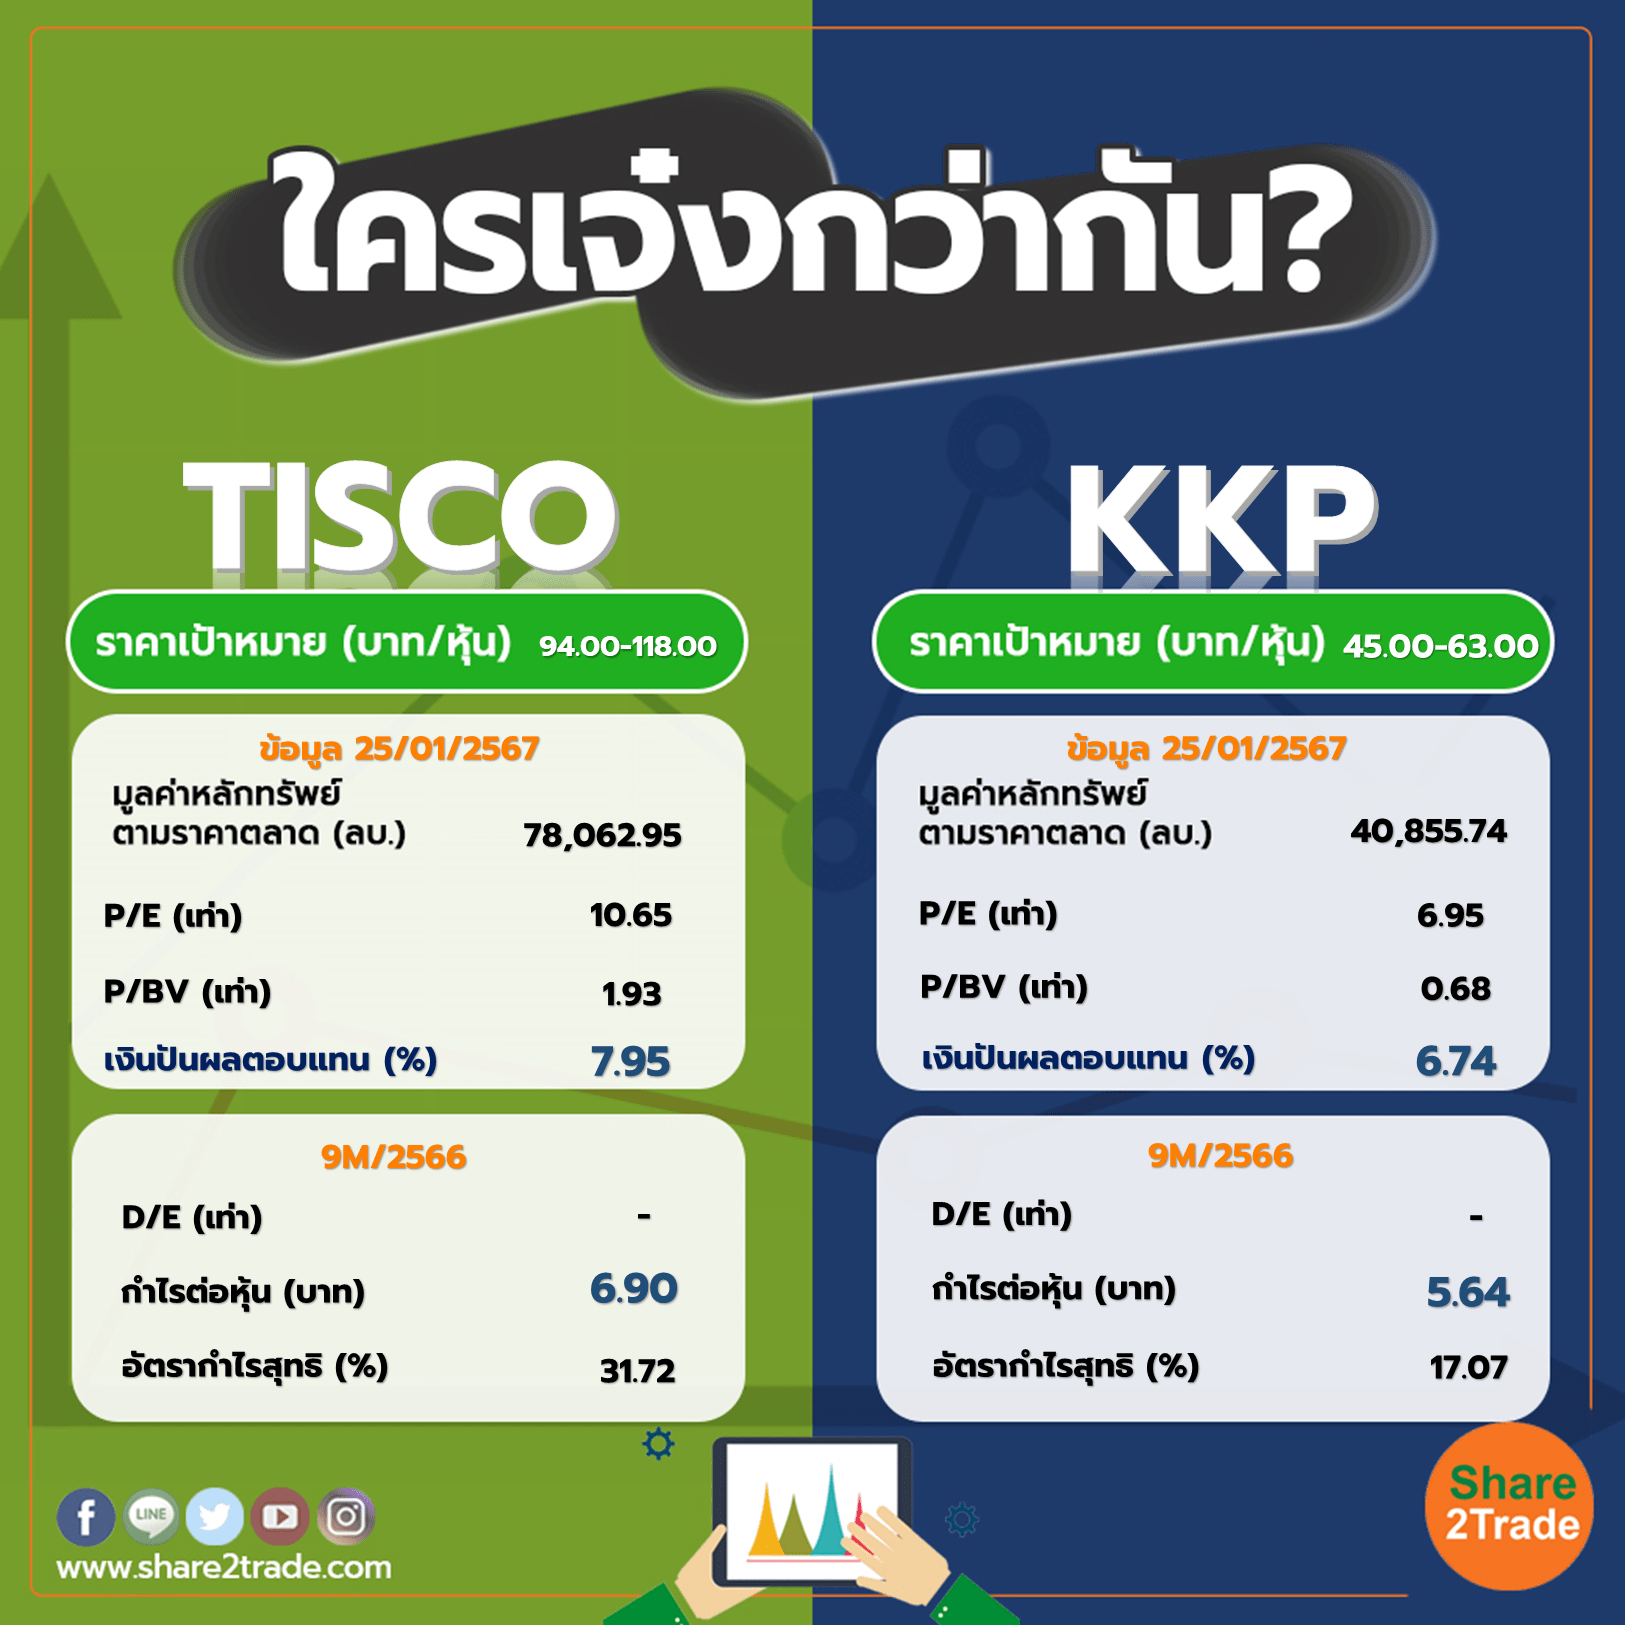 ใครเจ๋งกว่ากัน "TISCO" VS "KKP"